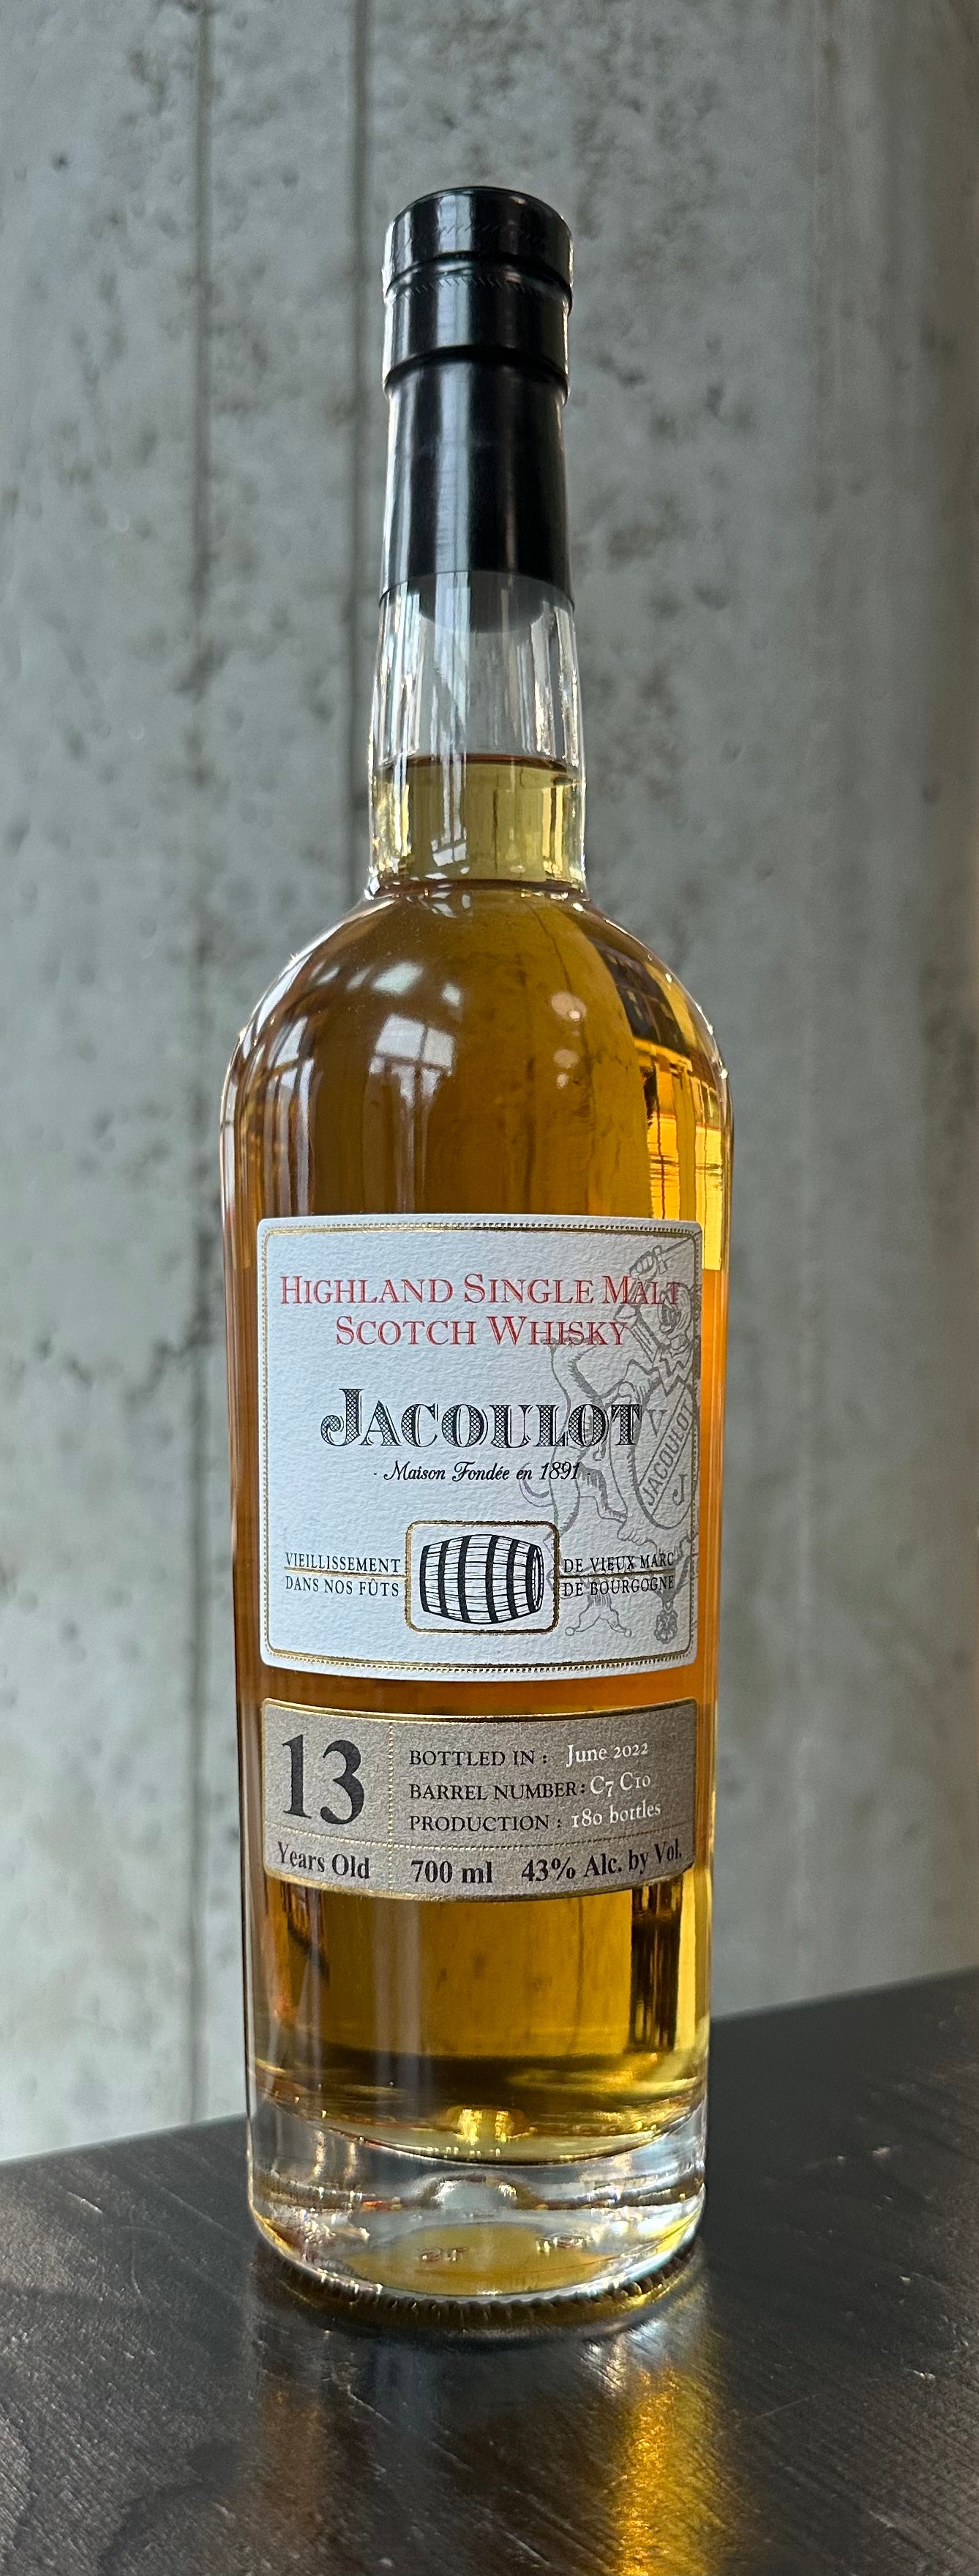 Jacoulot Highland Single Malt Scotch Whisky